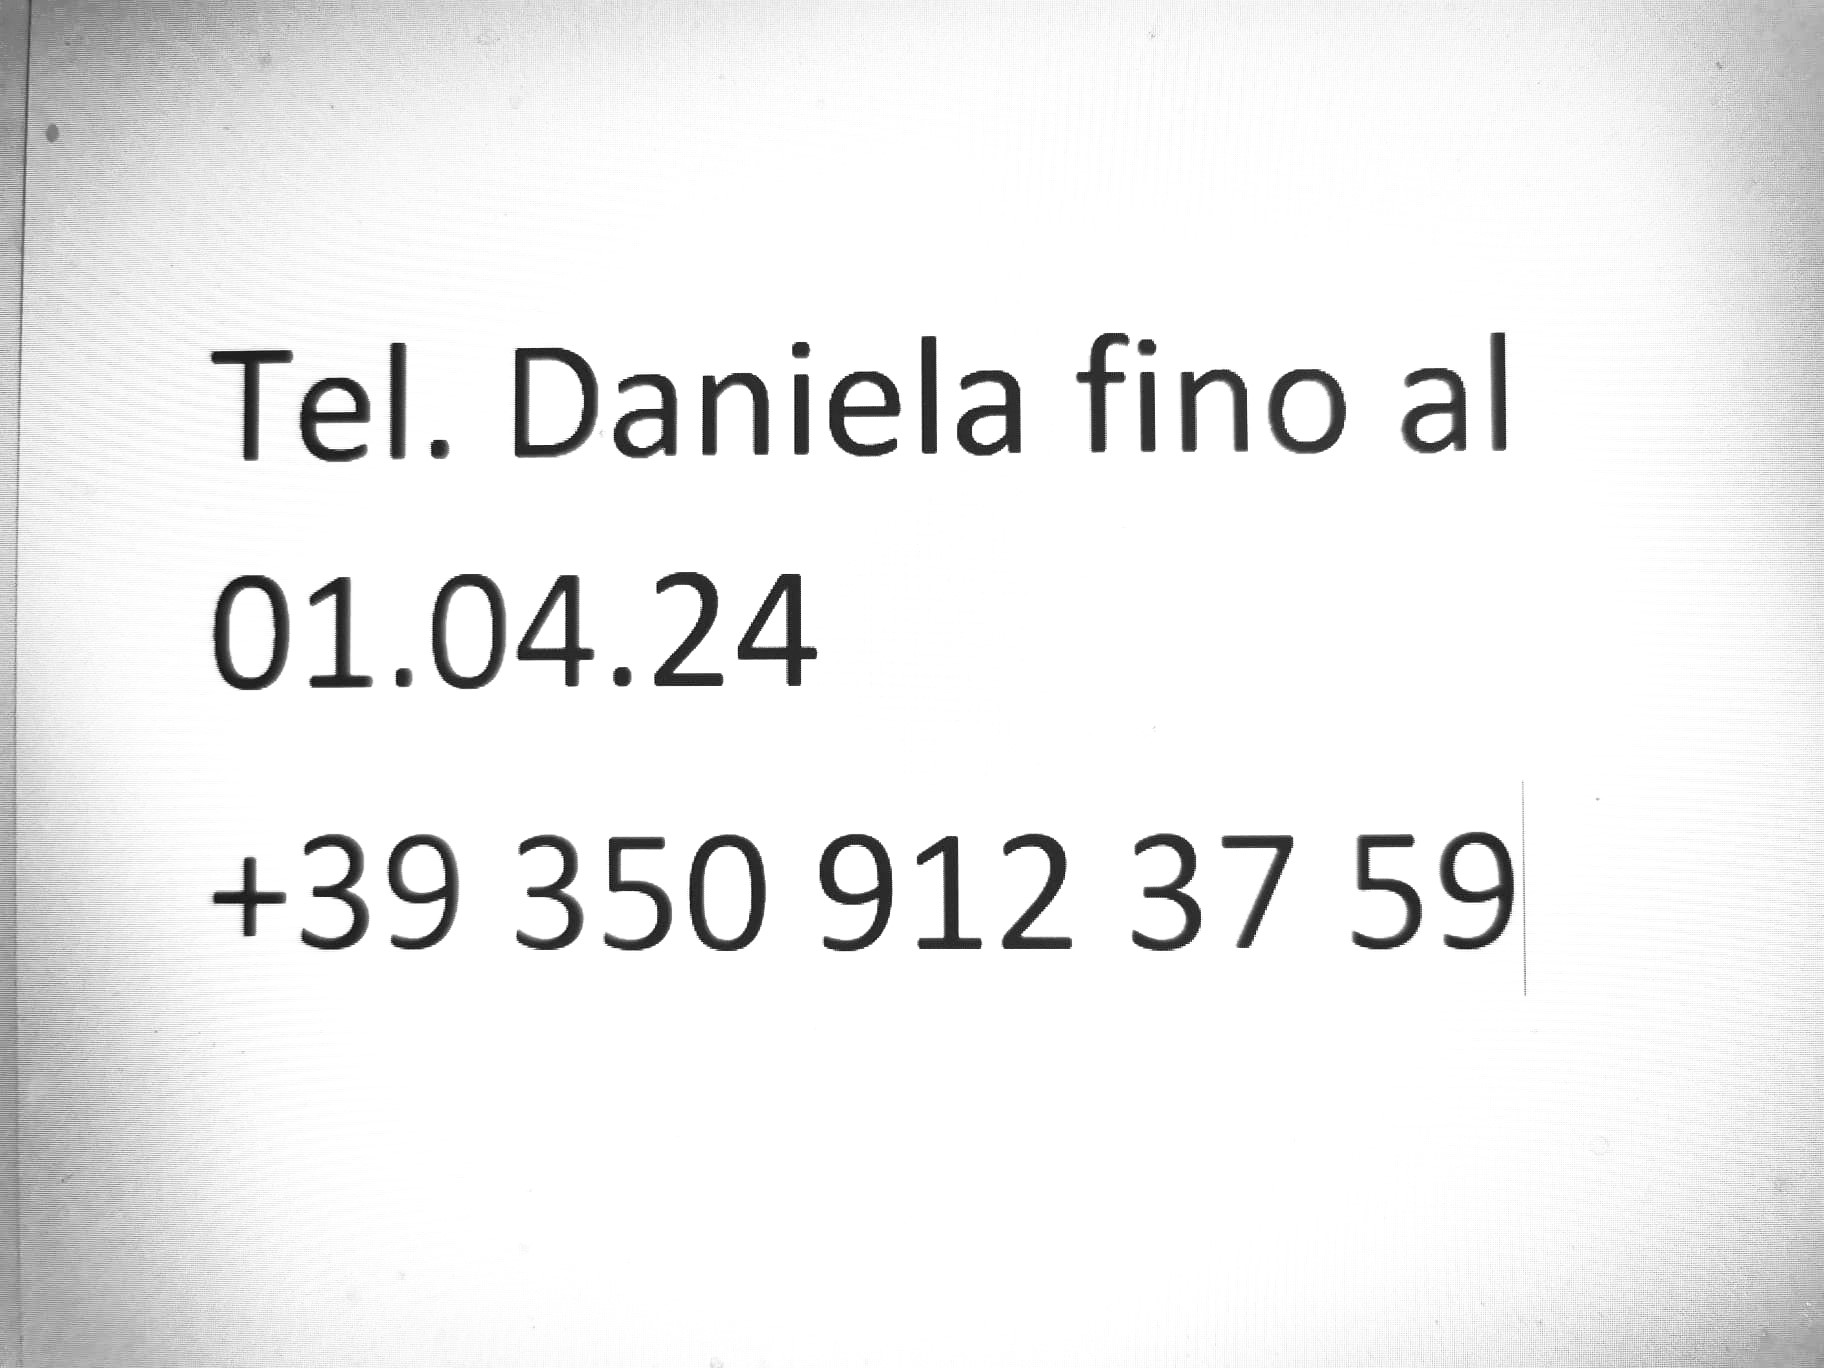 ATTENZIONE fino al 01.04.2024 contattare DANIELA LUST al numero +39 350 912 3759